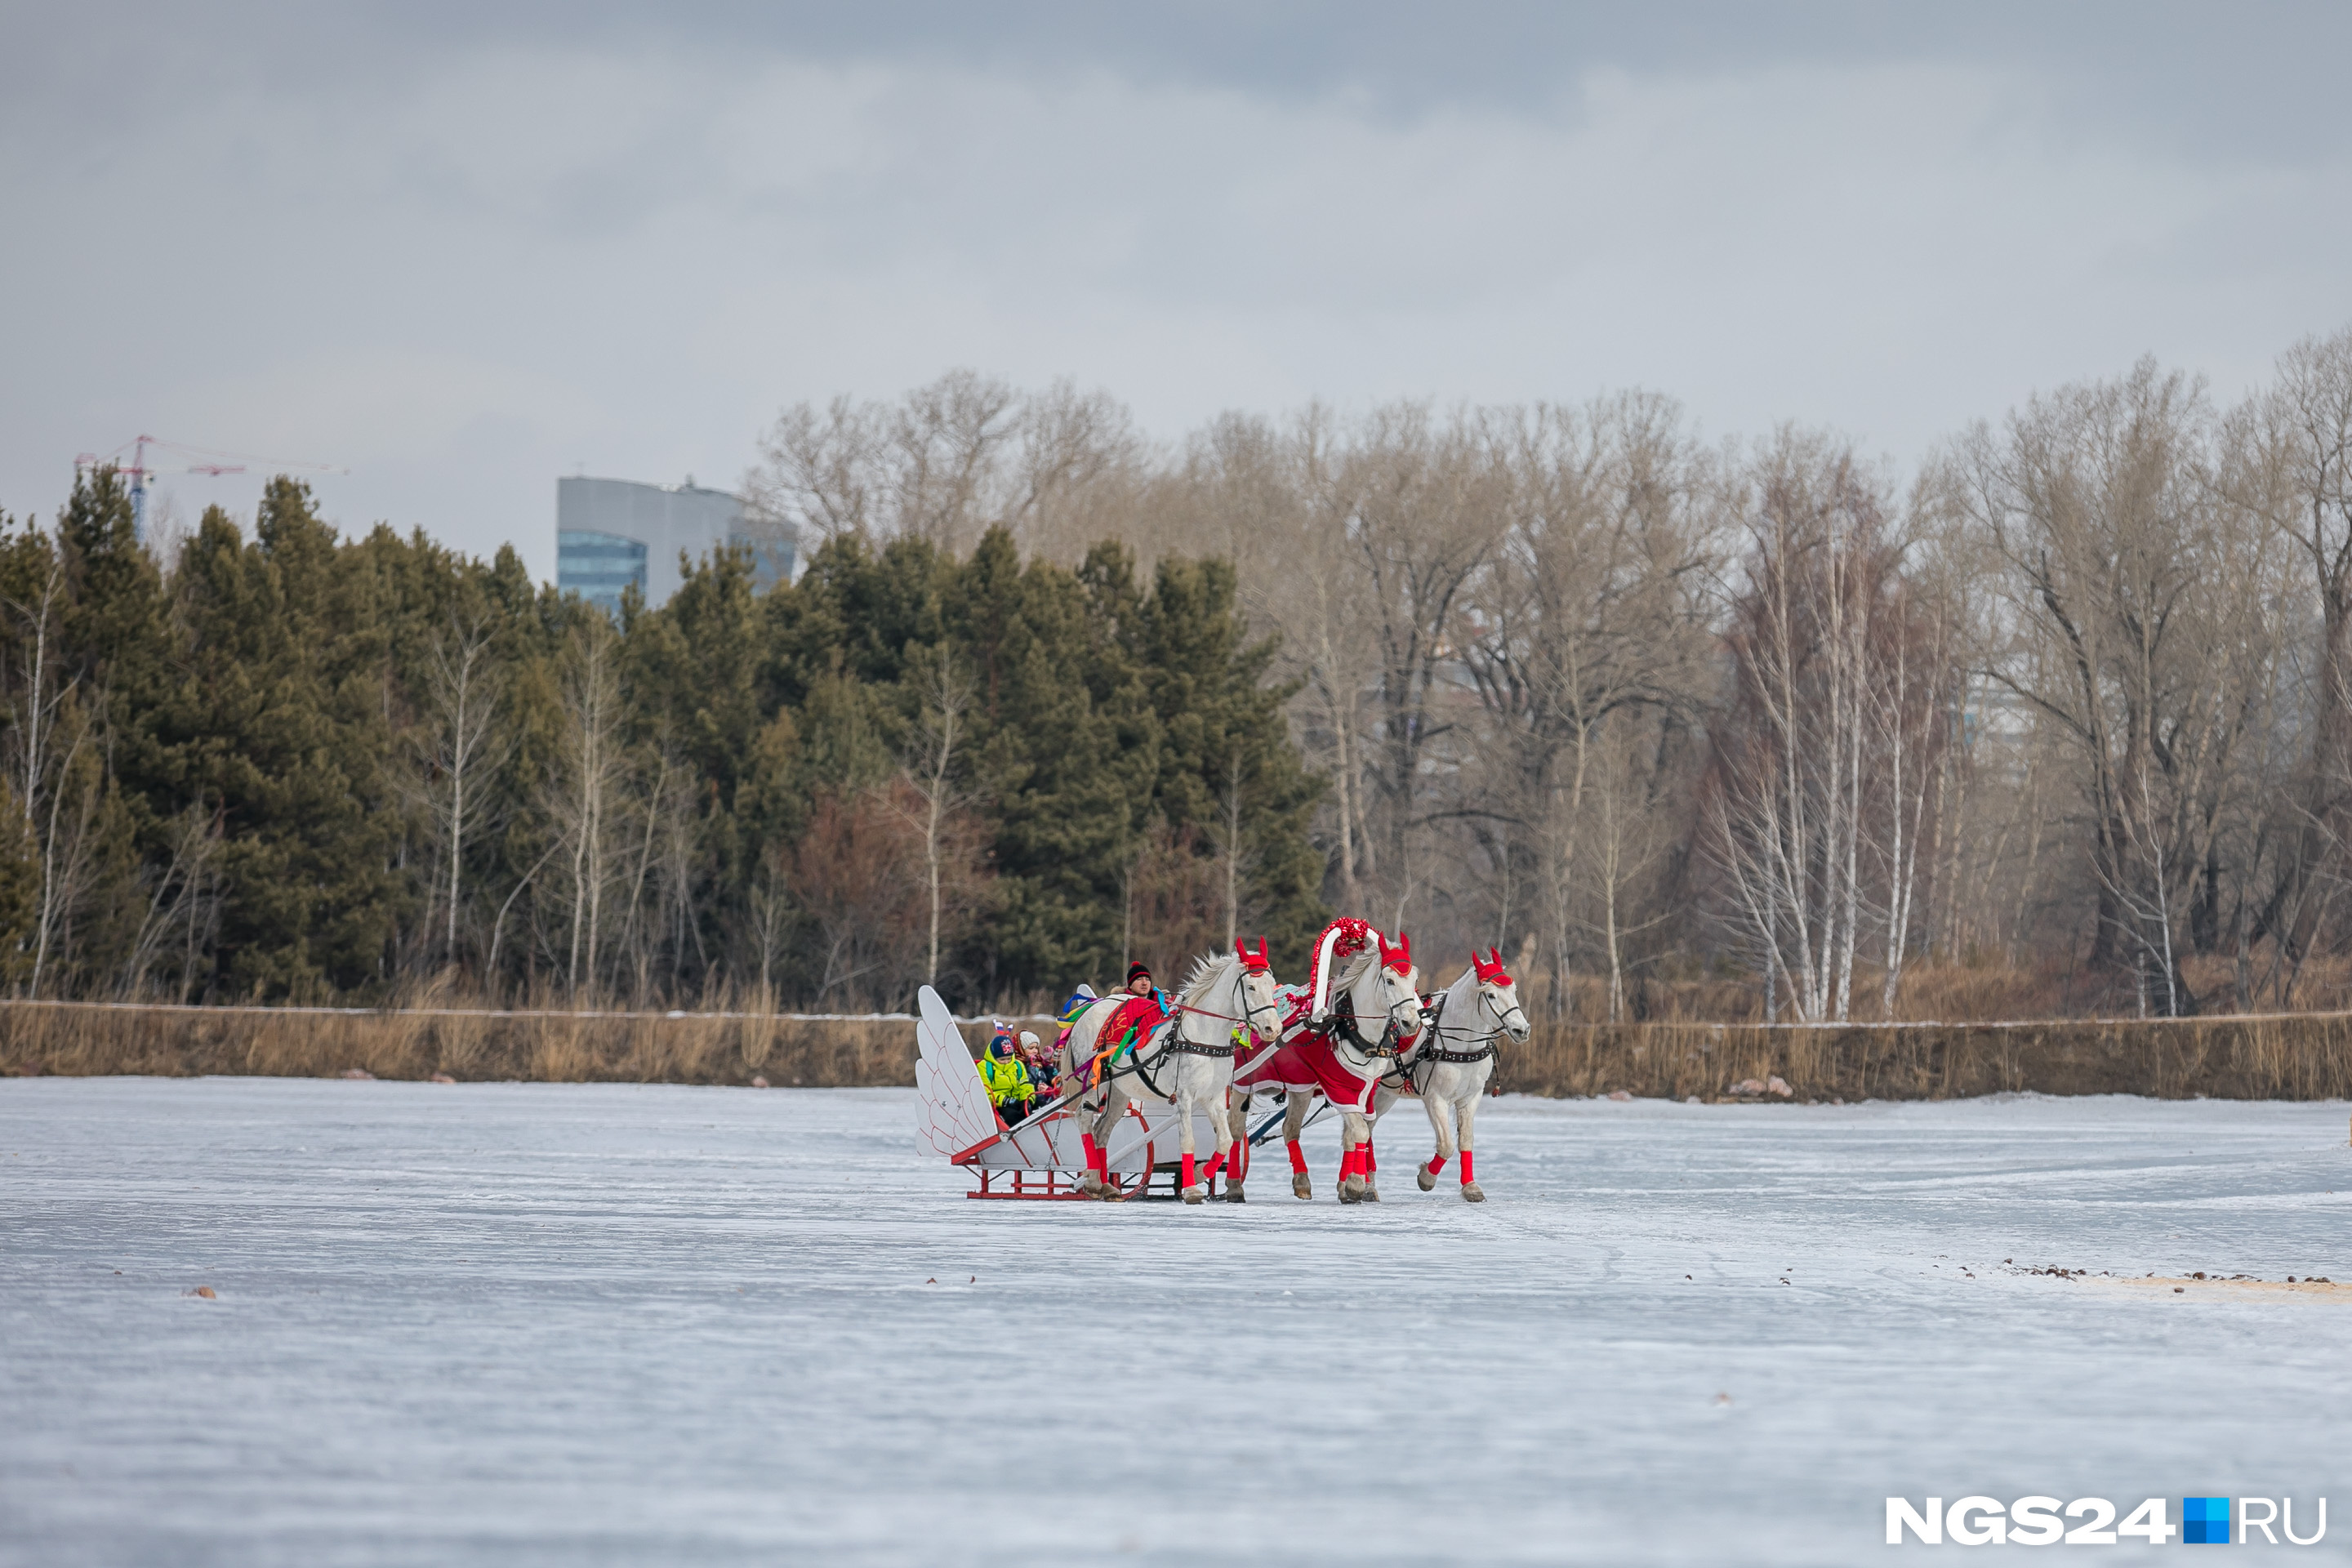 Тройка белых коней катала гостей по замерзшему водоему